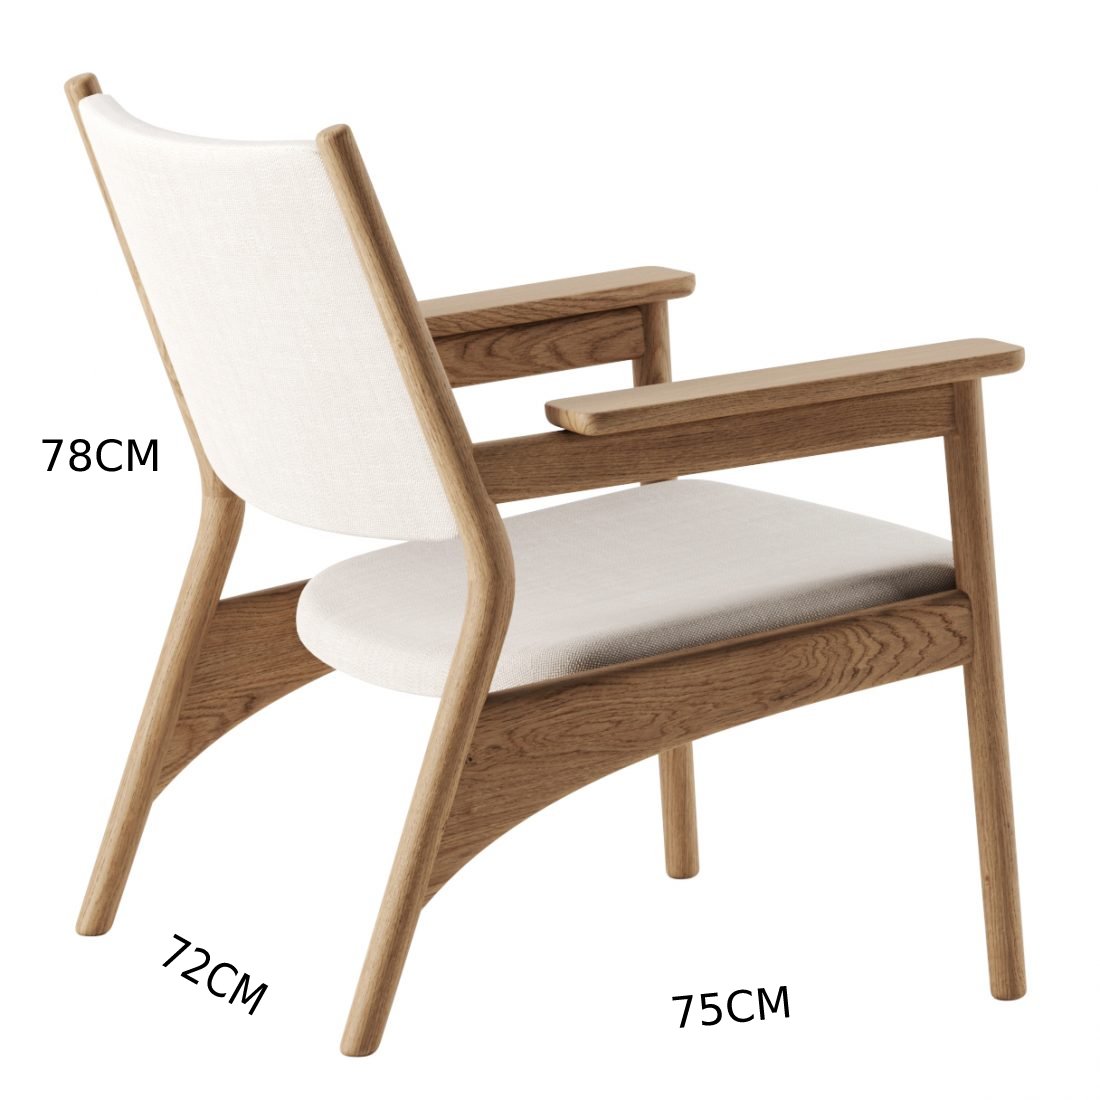 اشتري الان كرسي خشب زان طبيعي تصميم بسيط اونلاين | بيوت